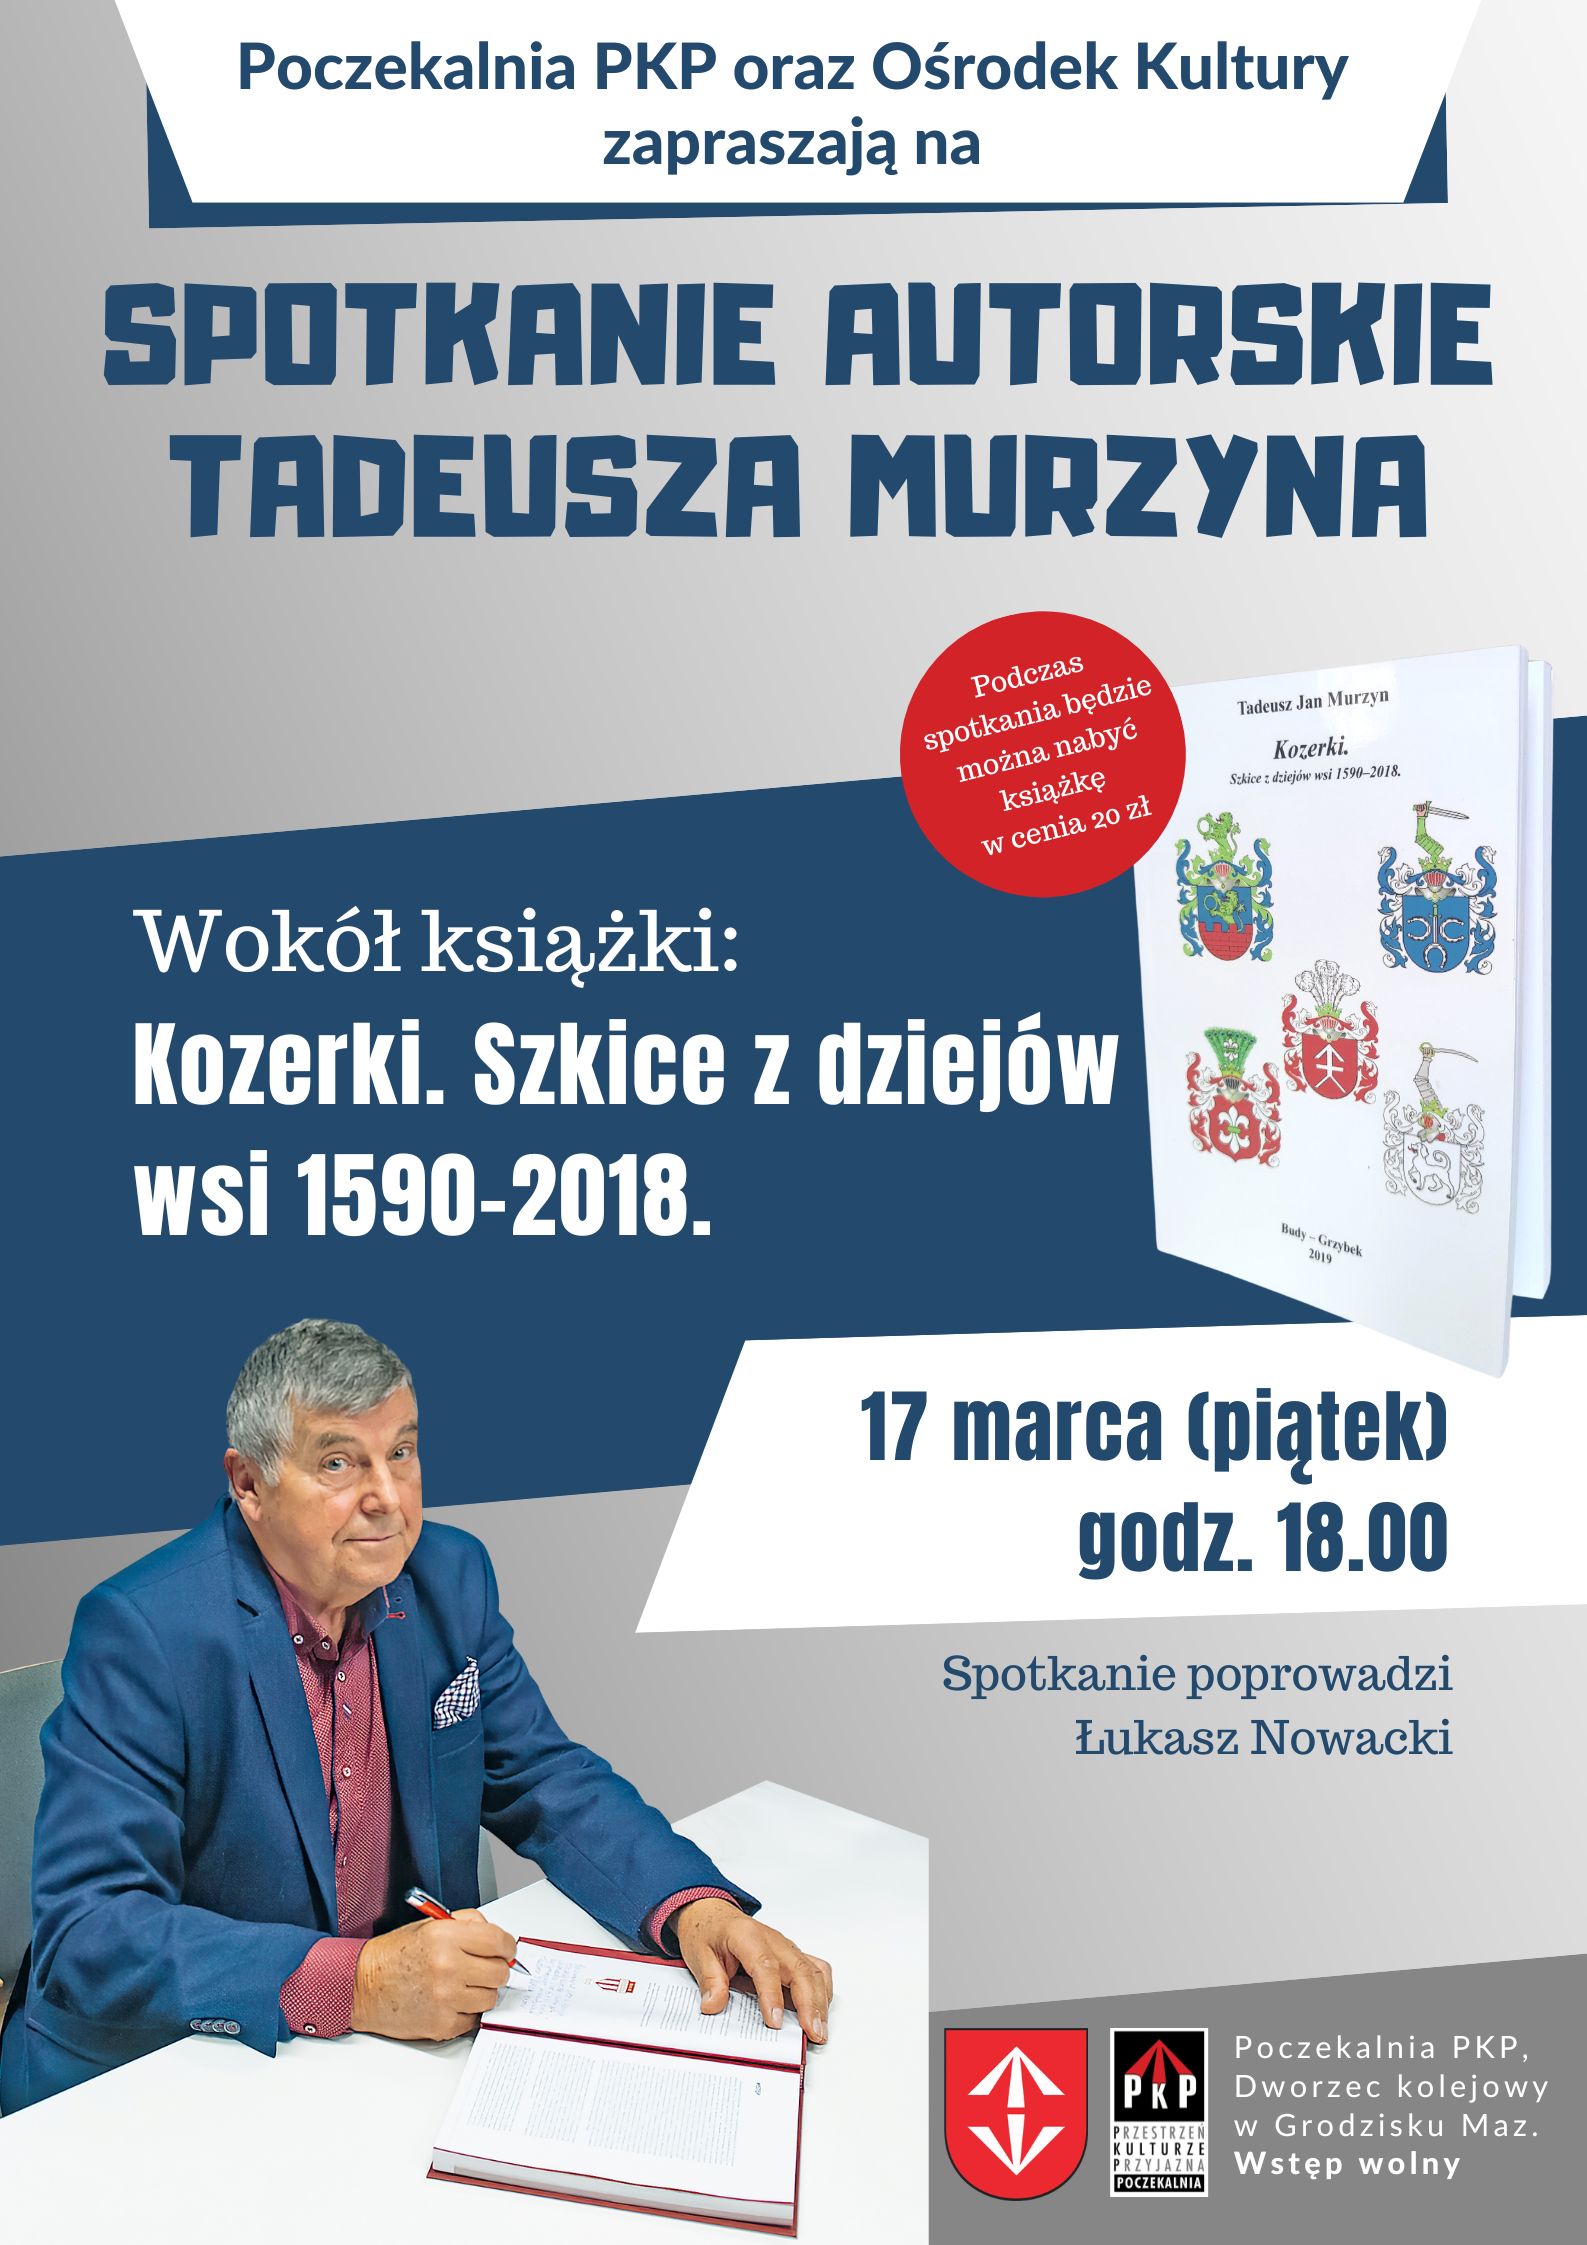 Spotkanie autorskie Tadeusz Murzyn